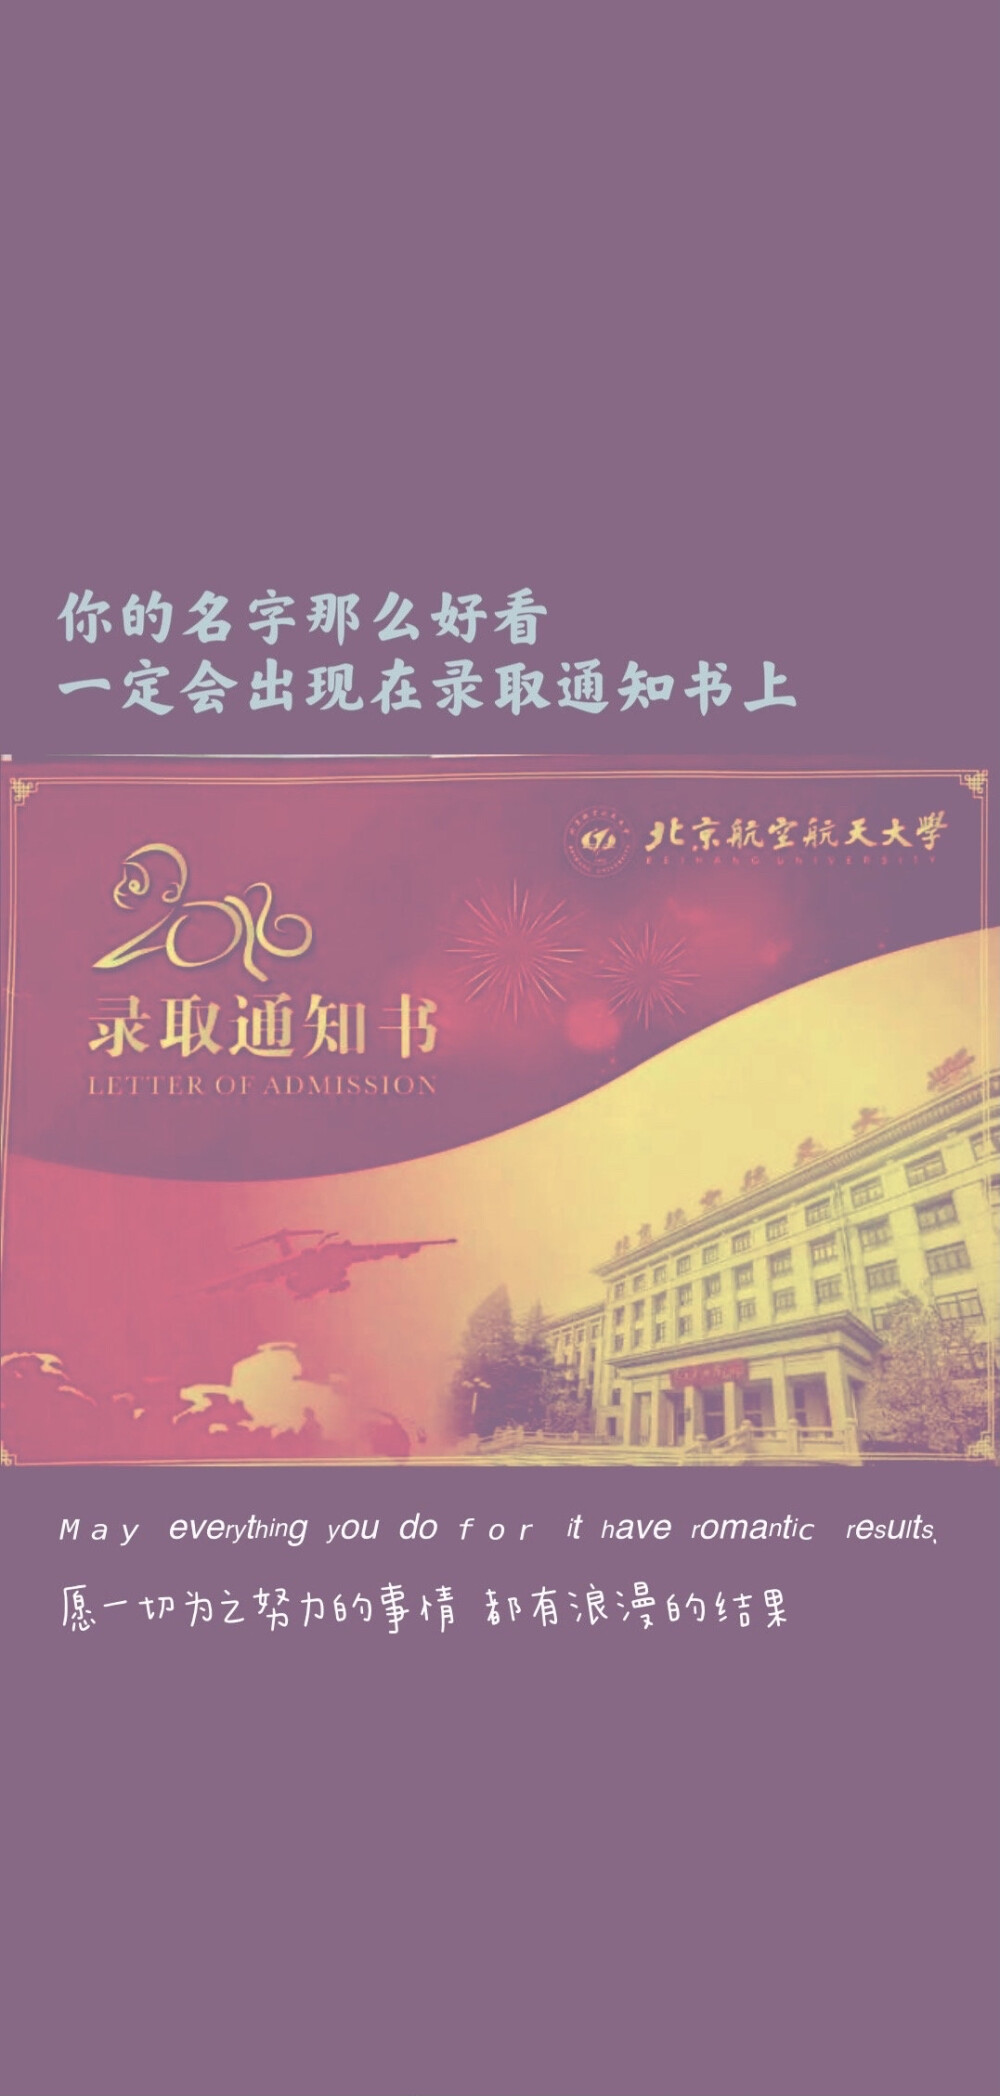 北京航空航天大学 - 堆糖,美图壁纸兴趣社区